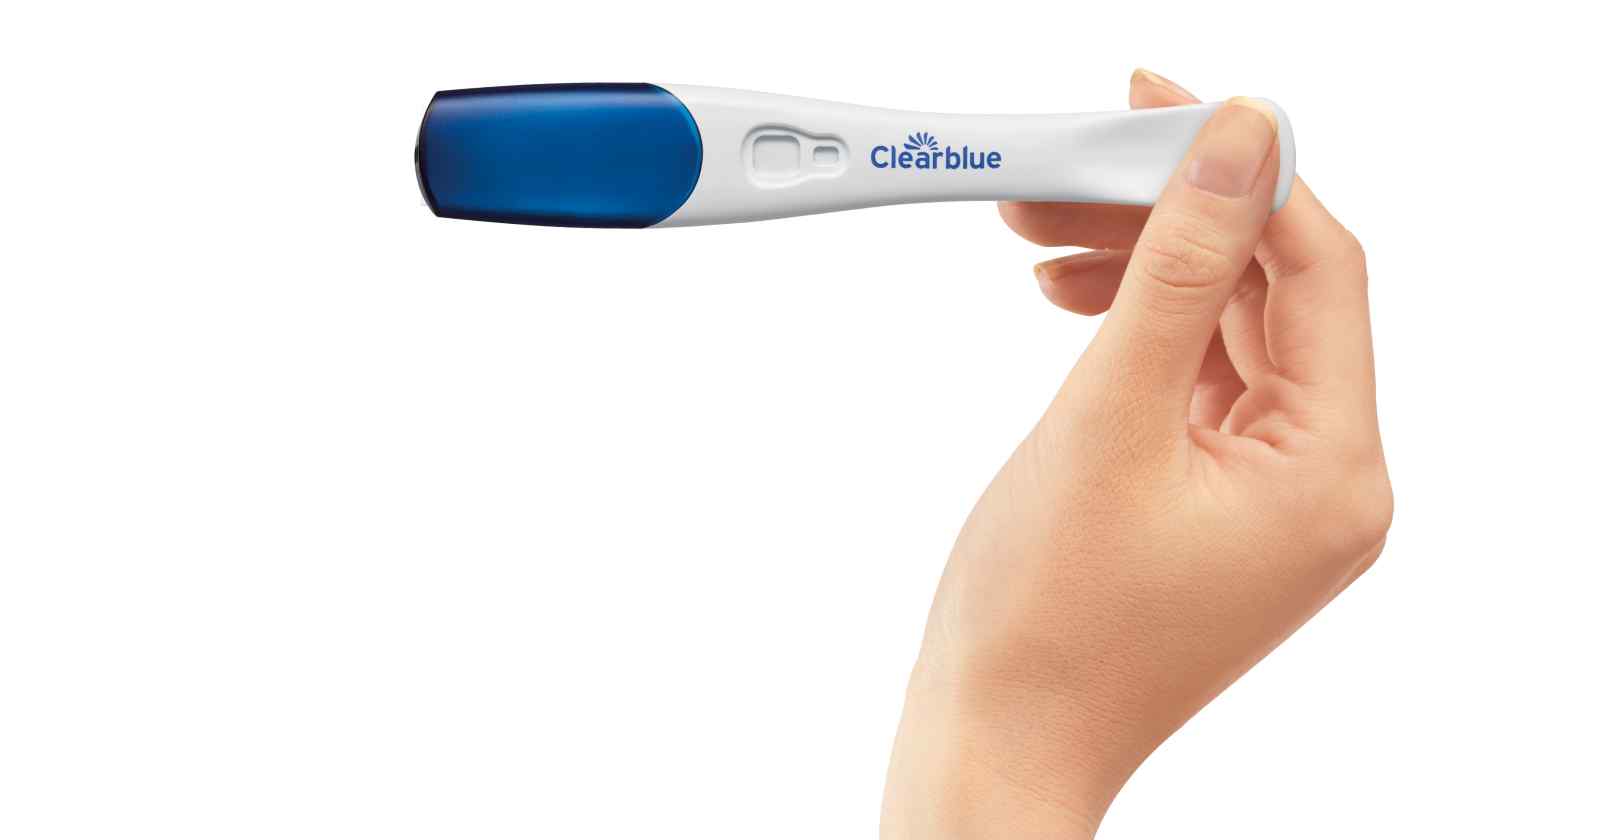 Teste de gravidez negativo e sem menstruação? - Clearblue